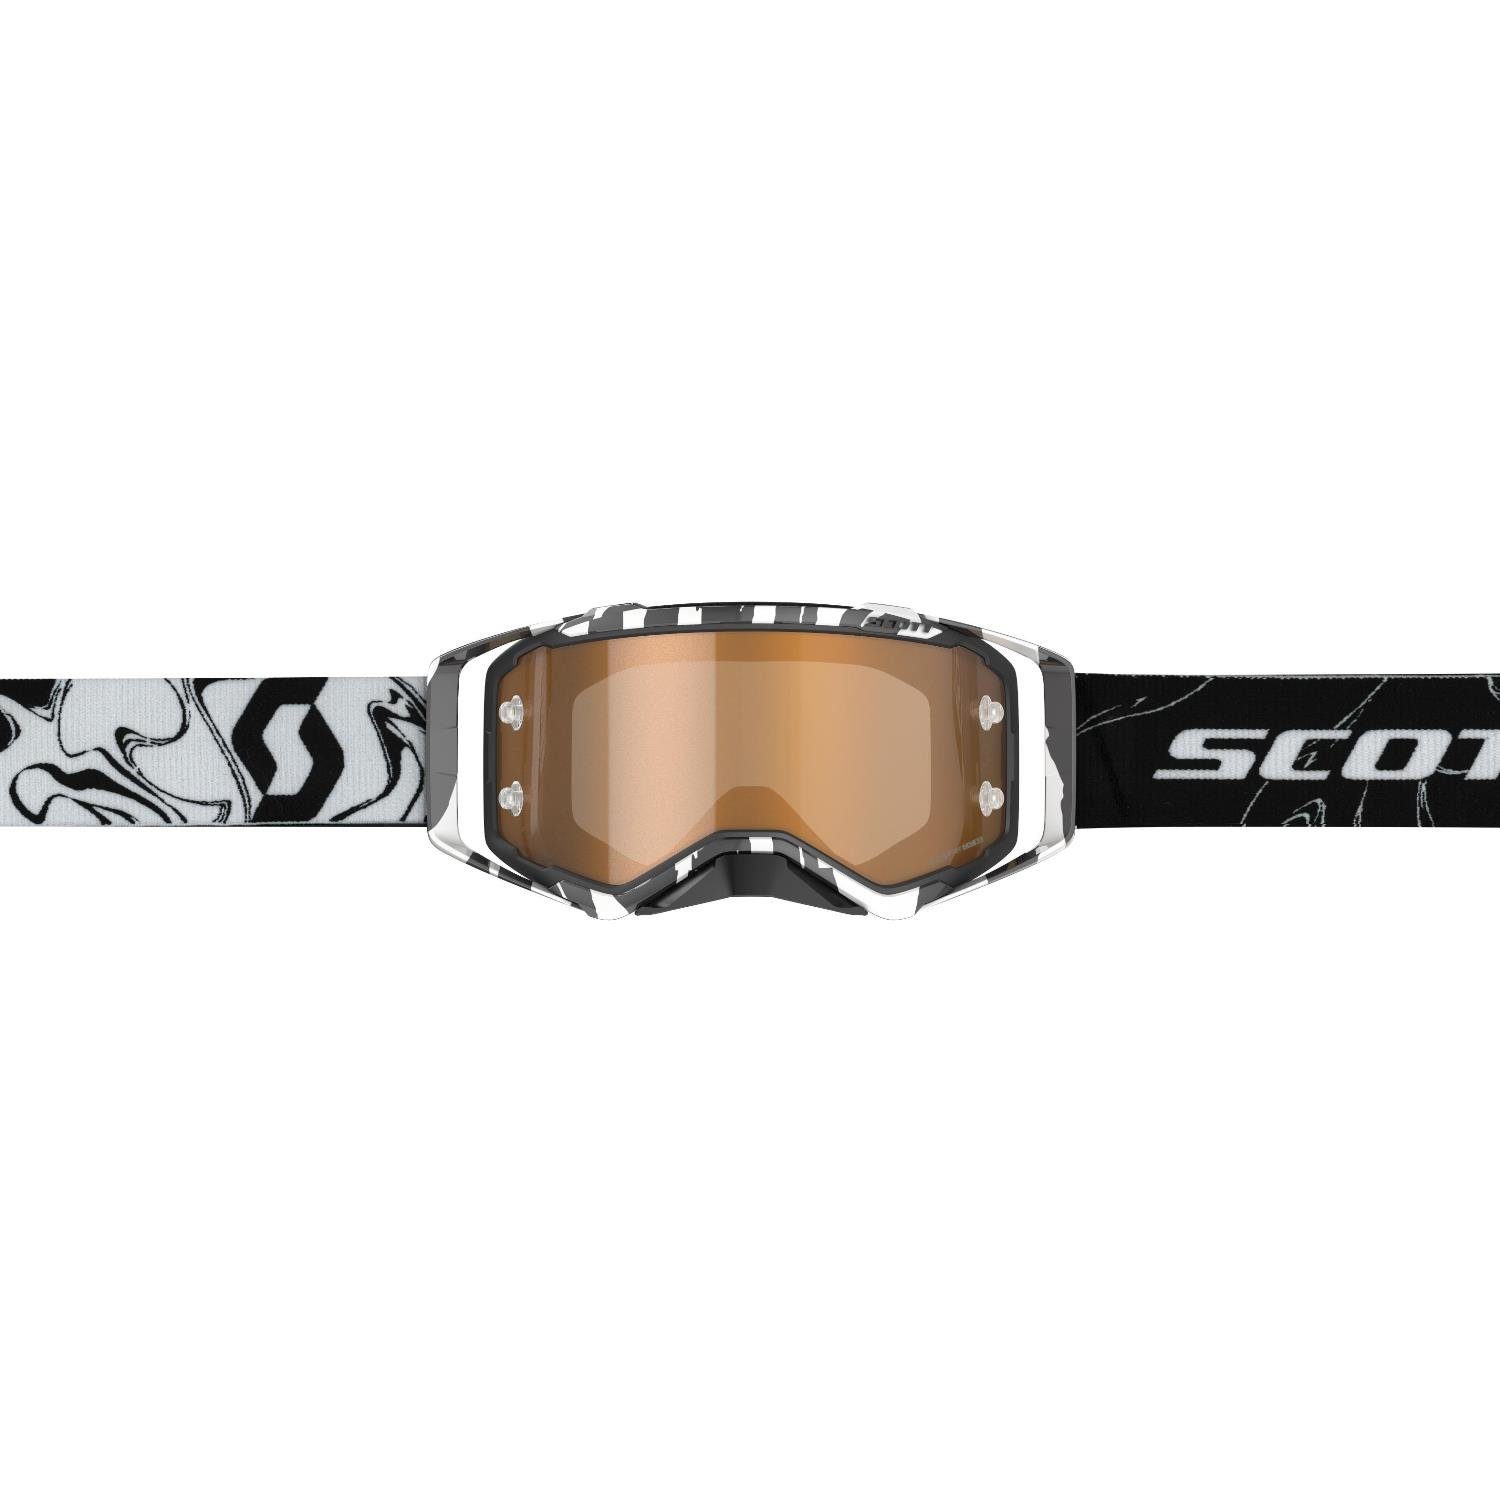 MX Unisex schwarz/weiß marmoriert Scott Scott Goggle Motocross Amplifier Sportbrille Brille Prospect